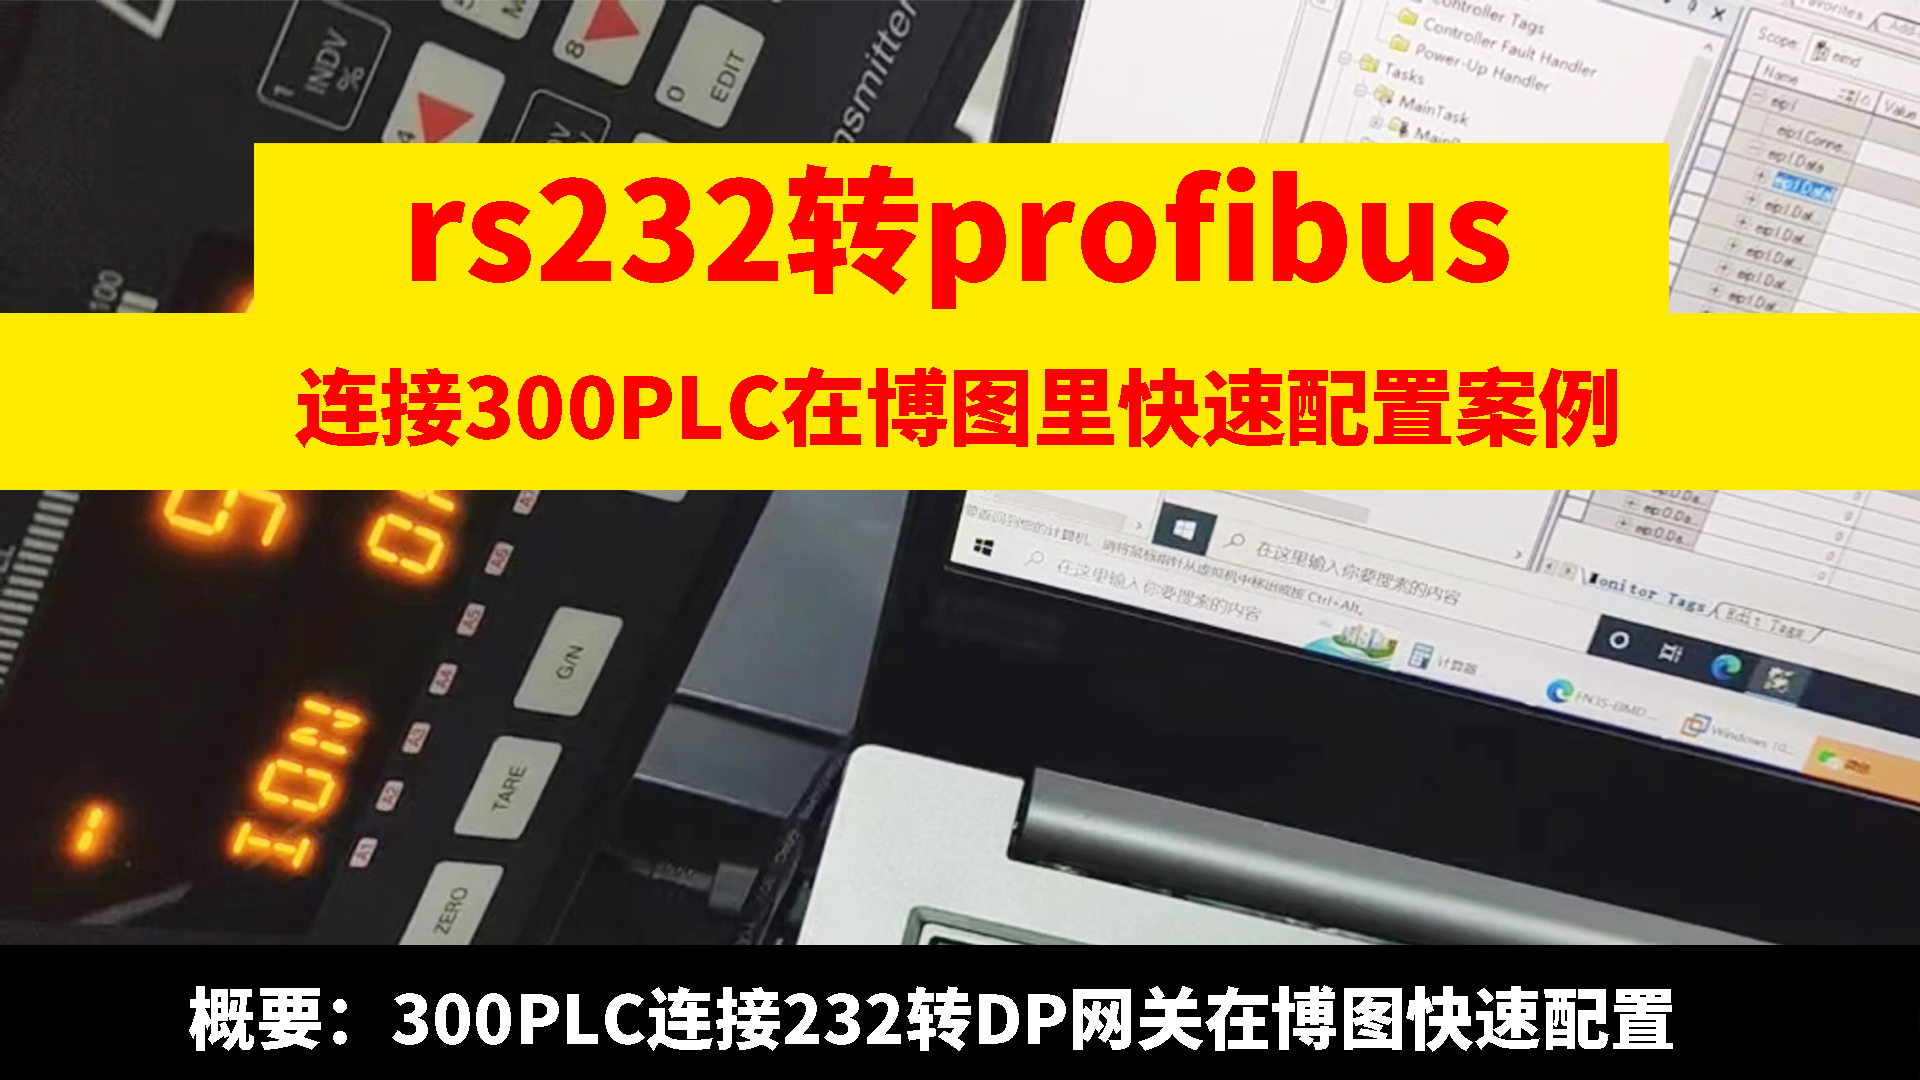 RS232转profibus网关连接300PLC在博图里快速配置#产品方案 #兴达易控 